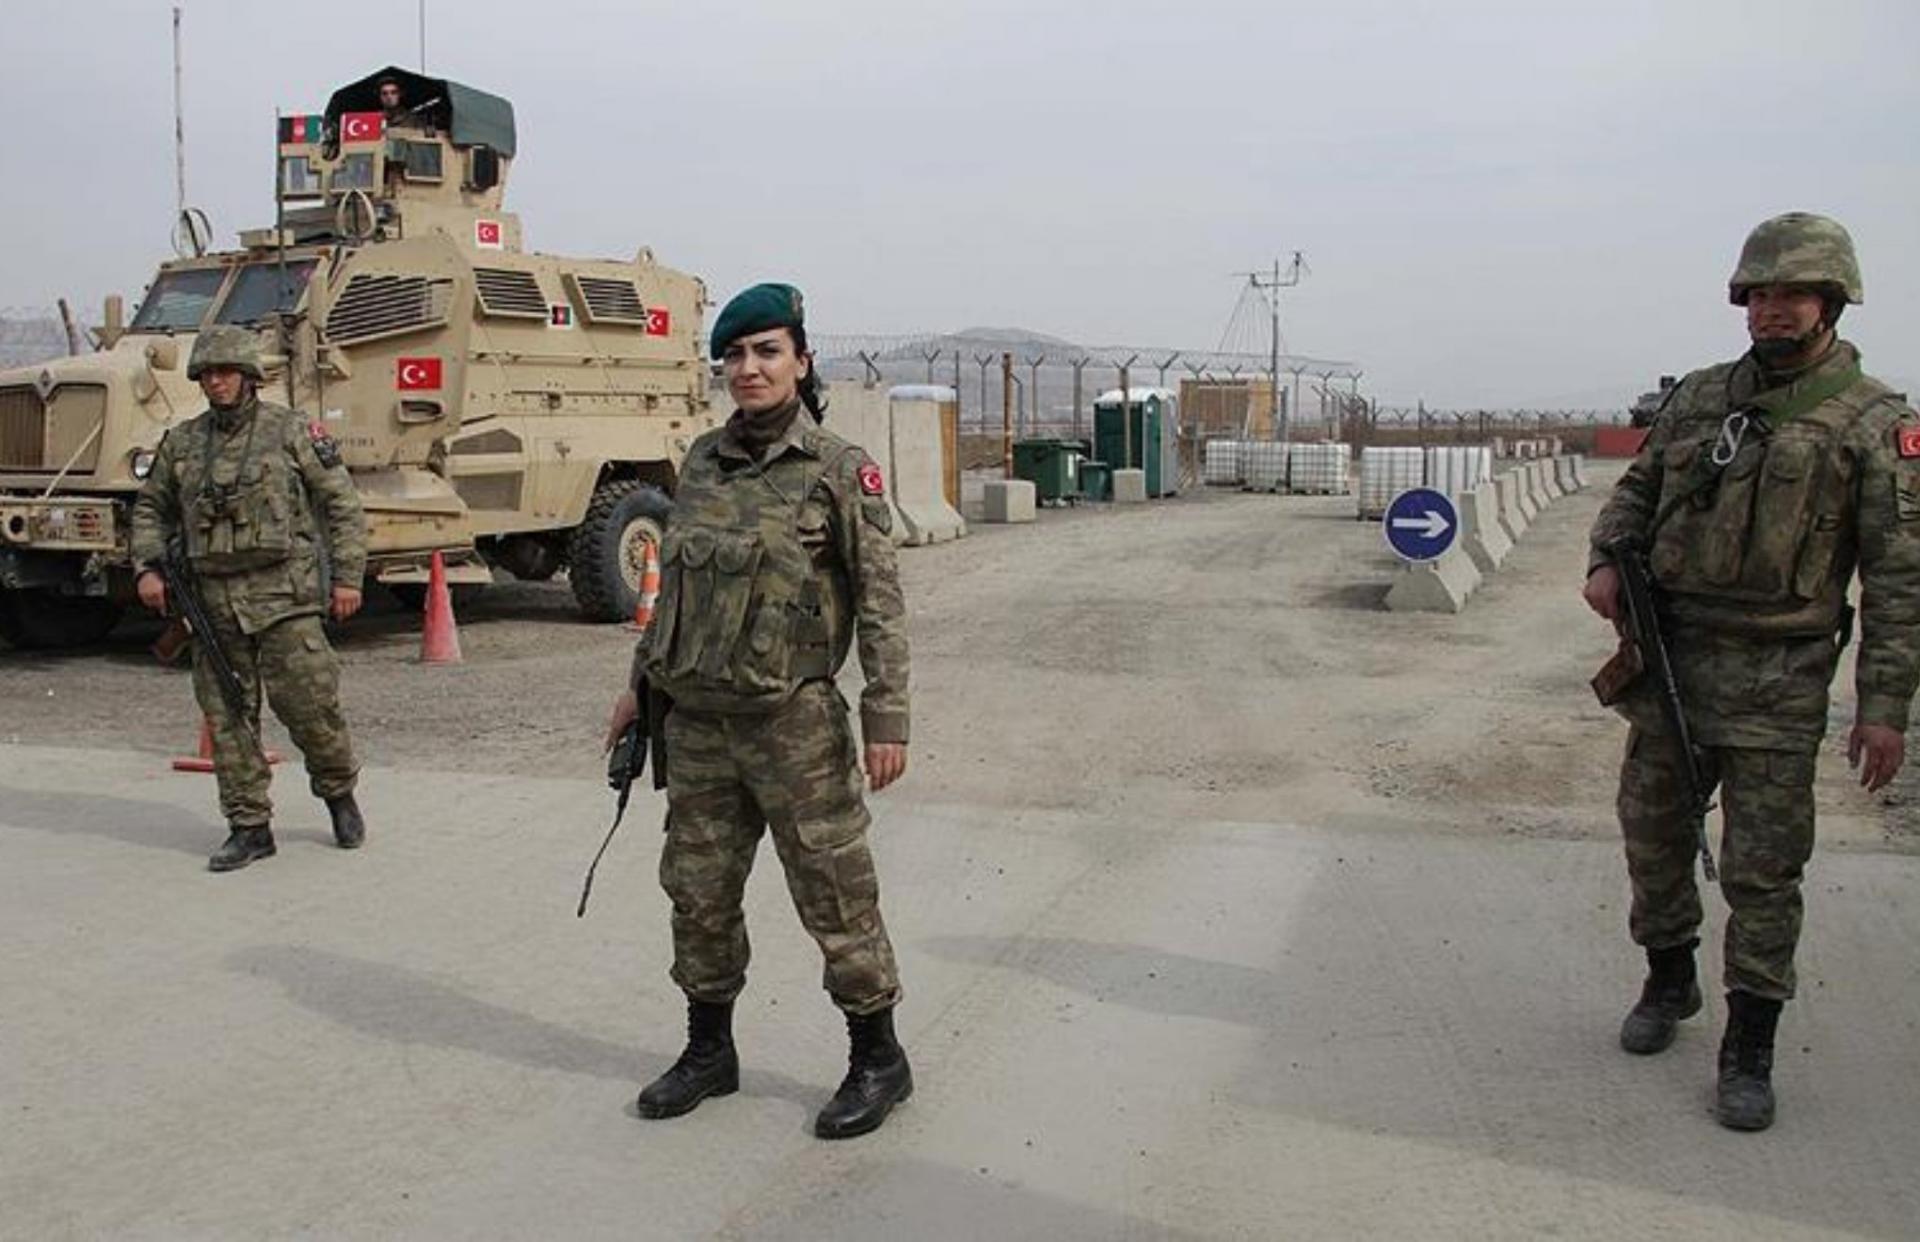 Turkiya qurolli kuchlari Afg'onistonni tark etmoqda